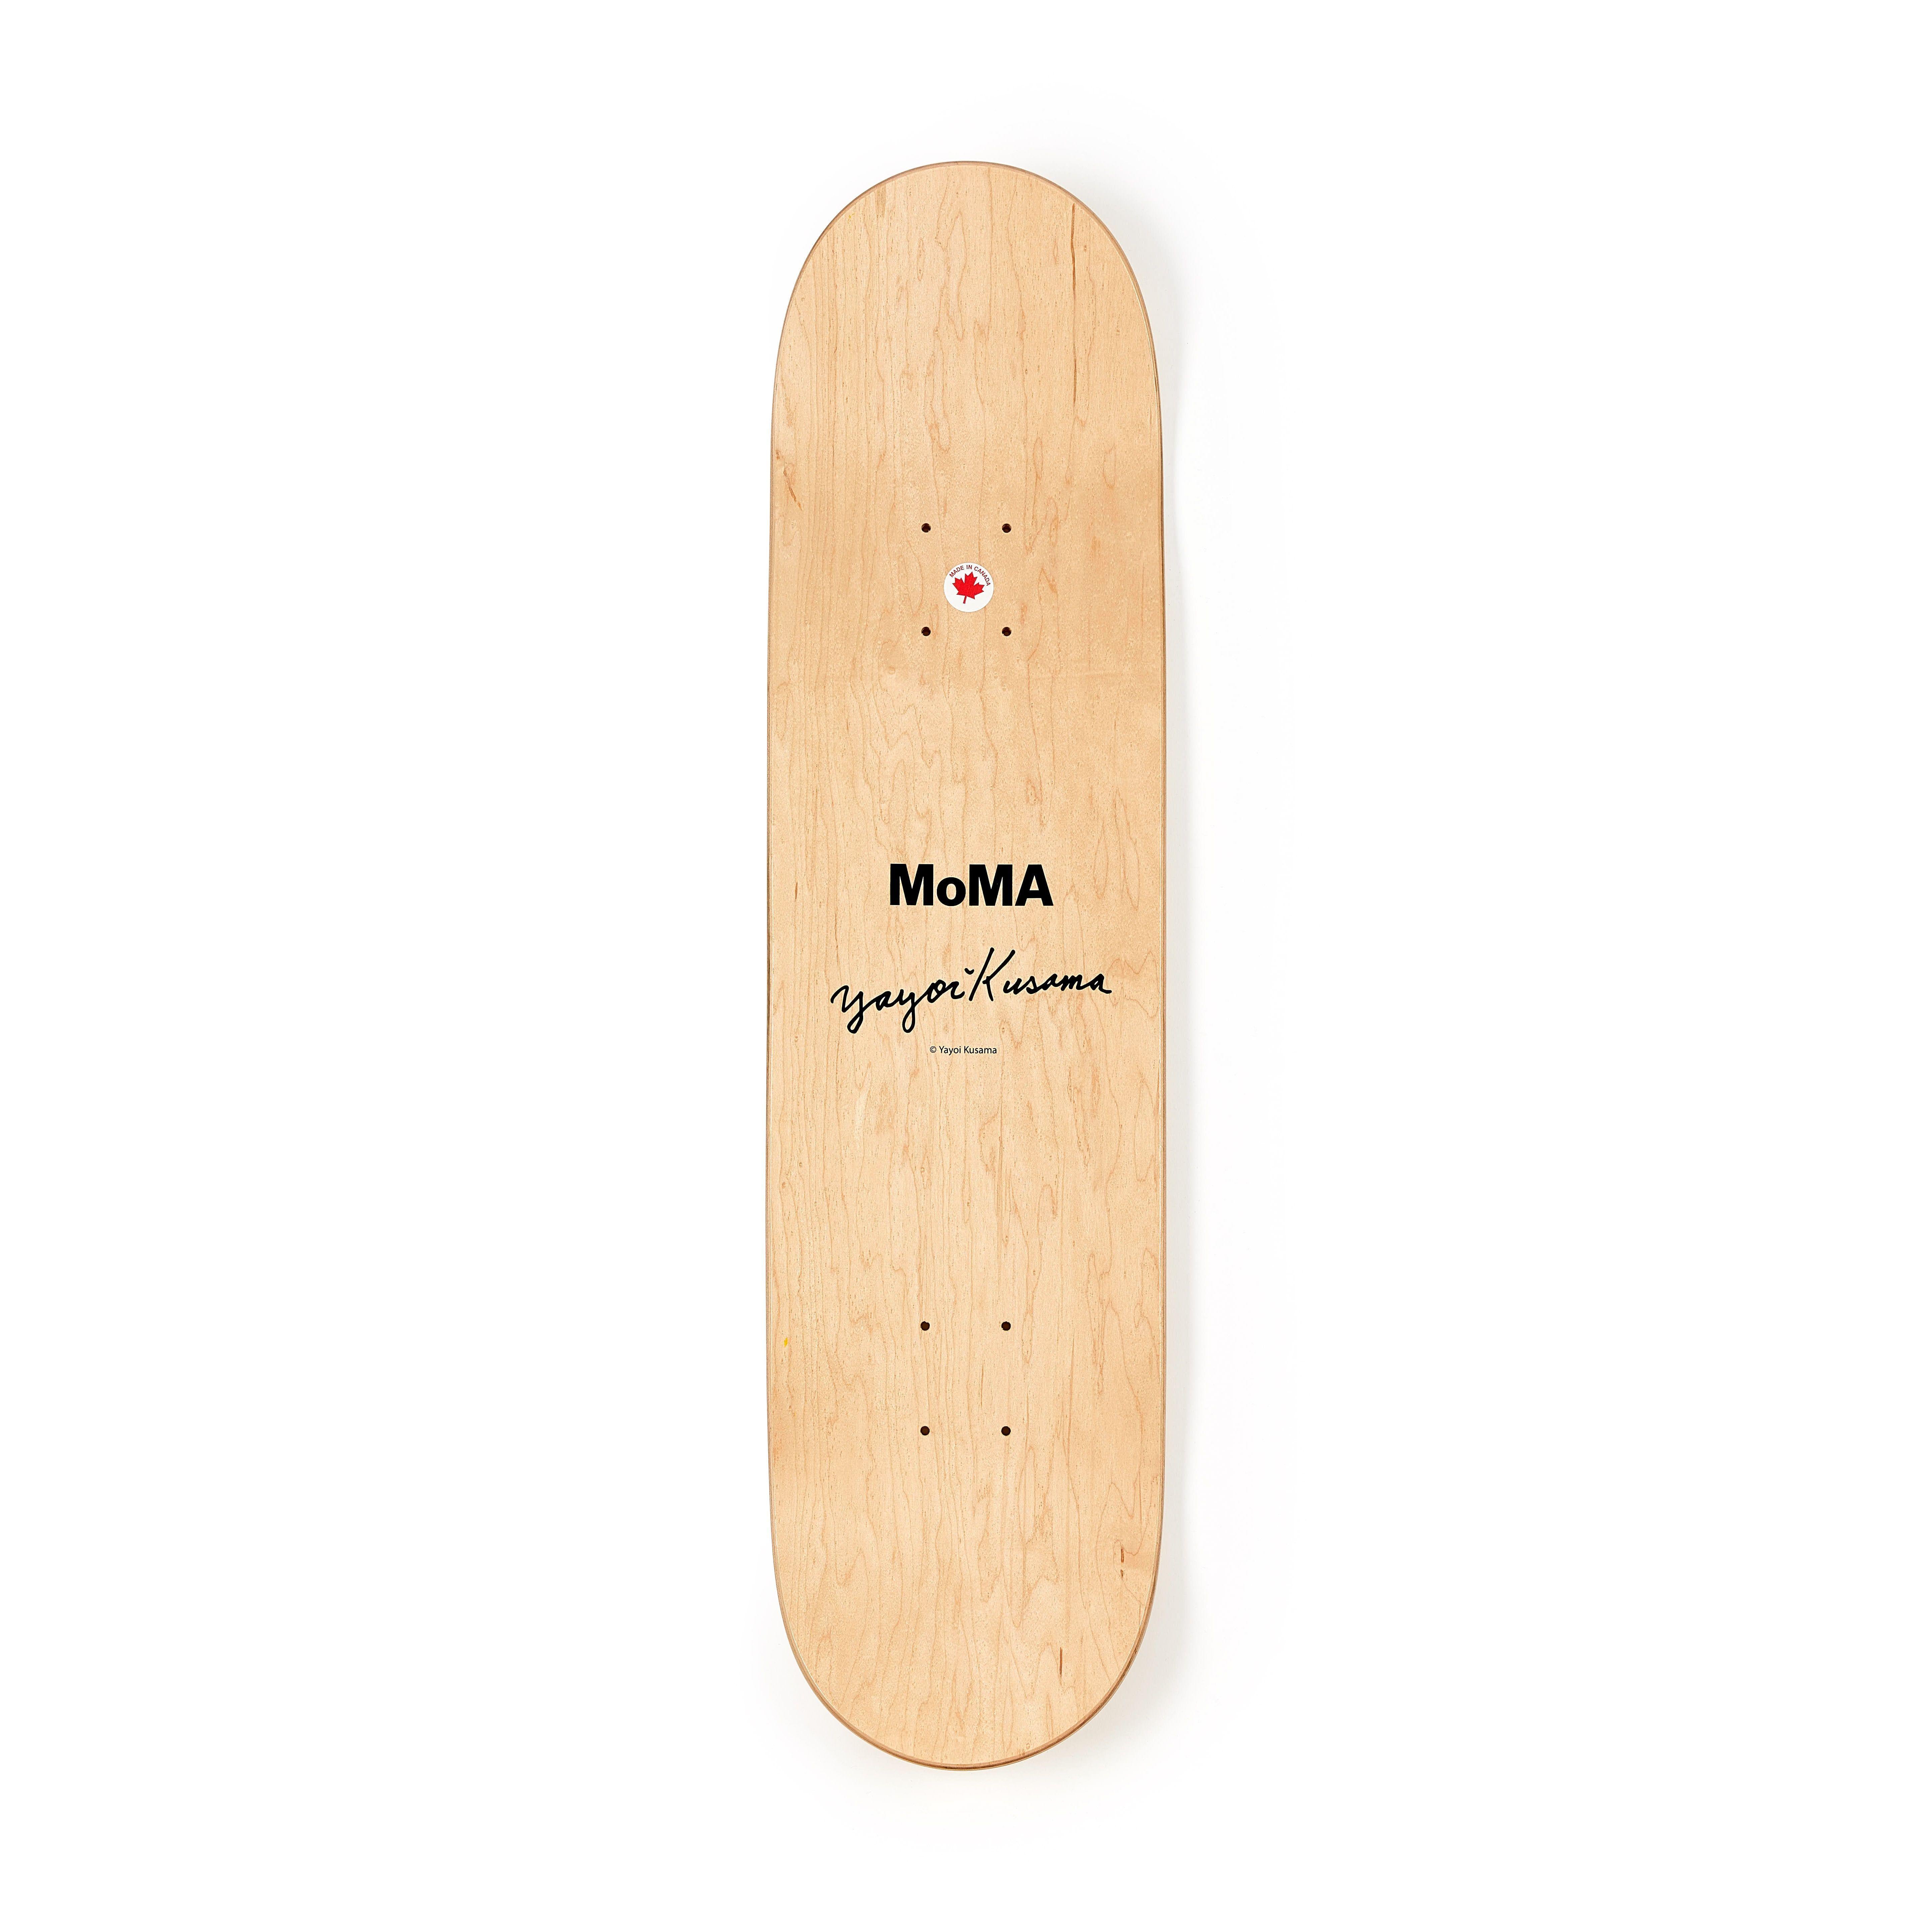 Kusama Skateboard deck (Yayoi Kusama MoMa)  For Sale 1